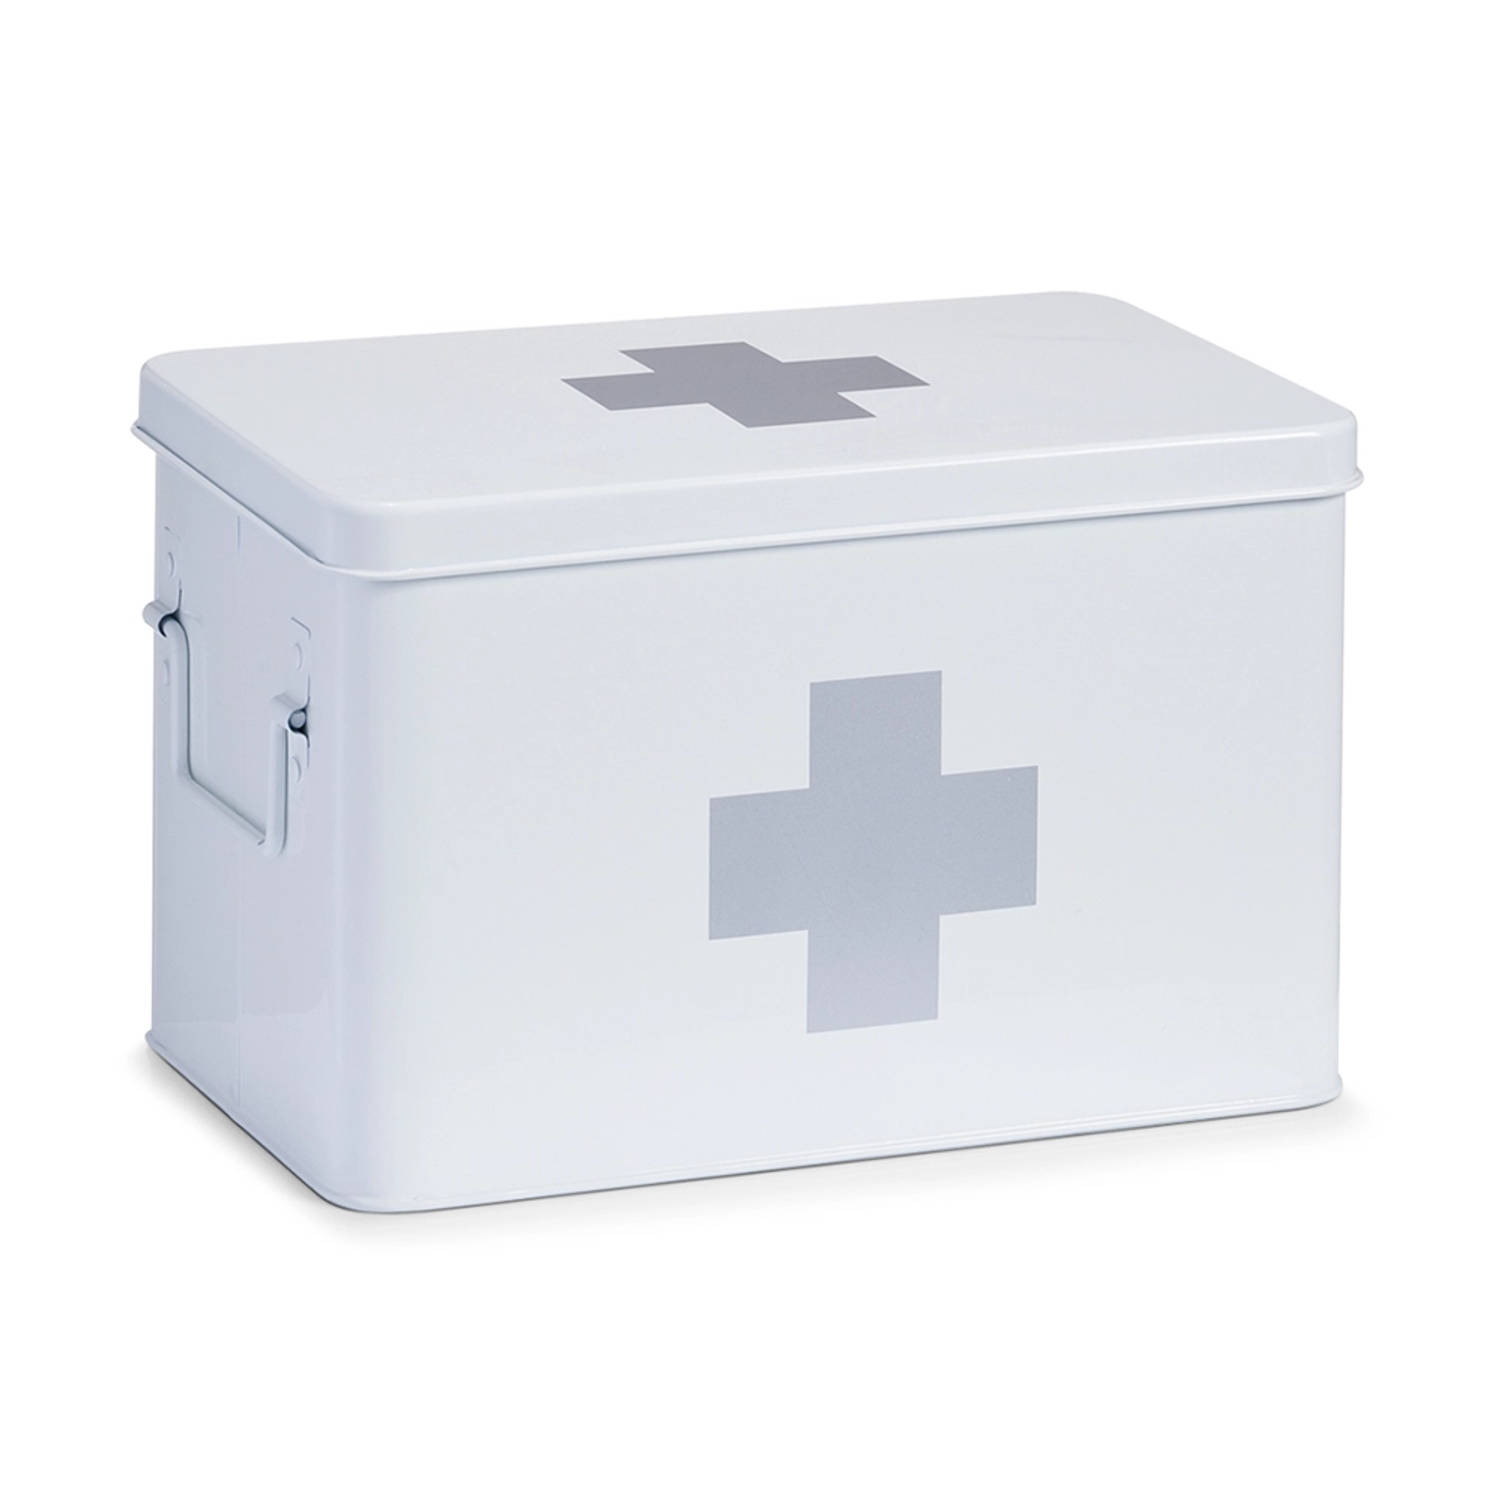 Medicijnbox - Wit - metaal - opbergdoos medicijnen - EHBO doos - ca. 32 x 19,5 x 20 cm